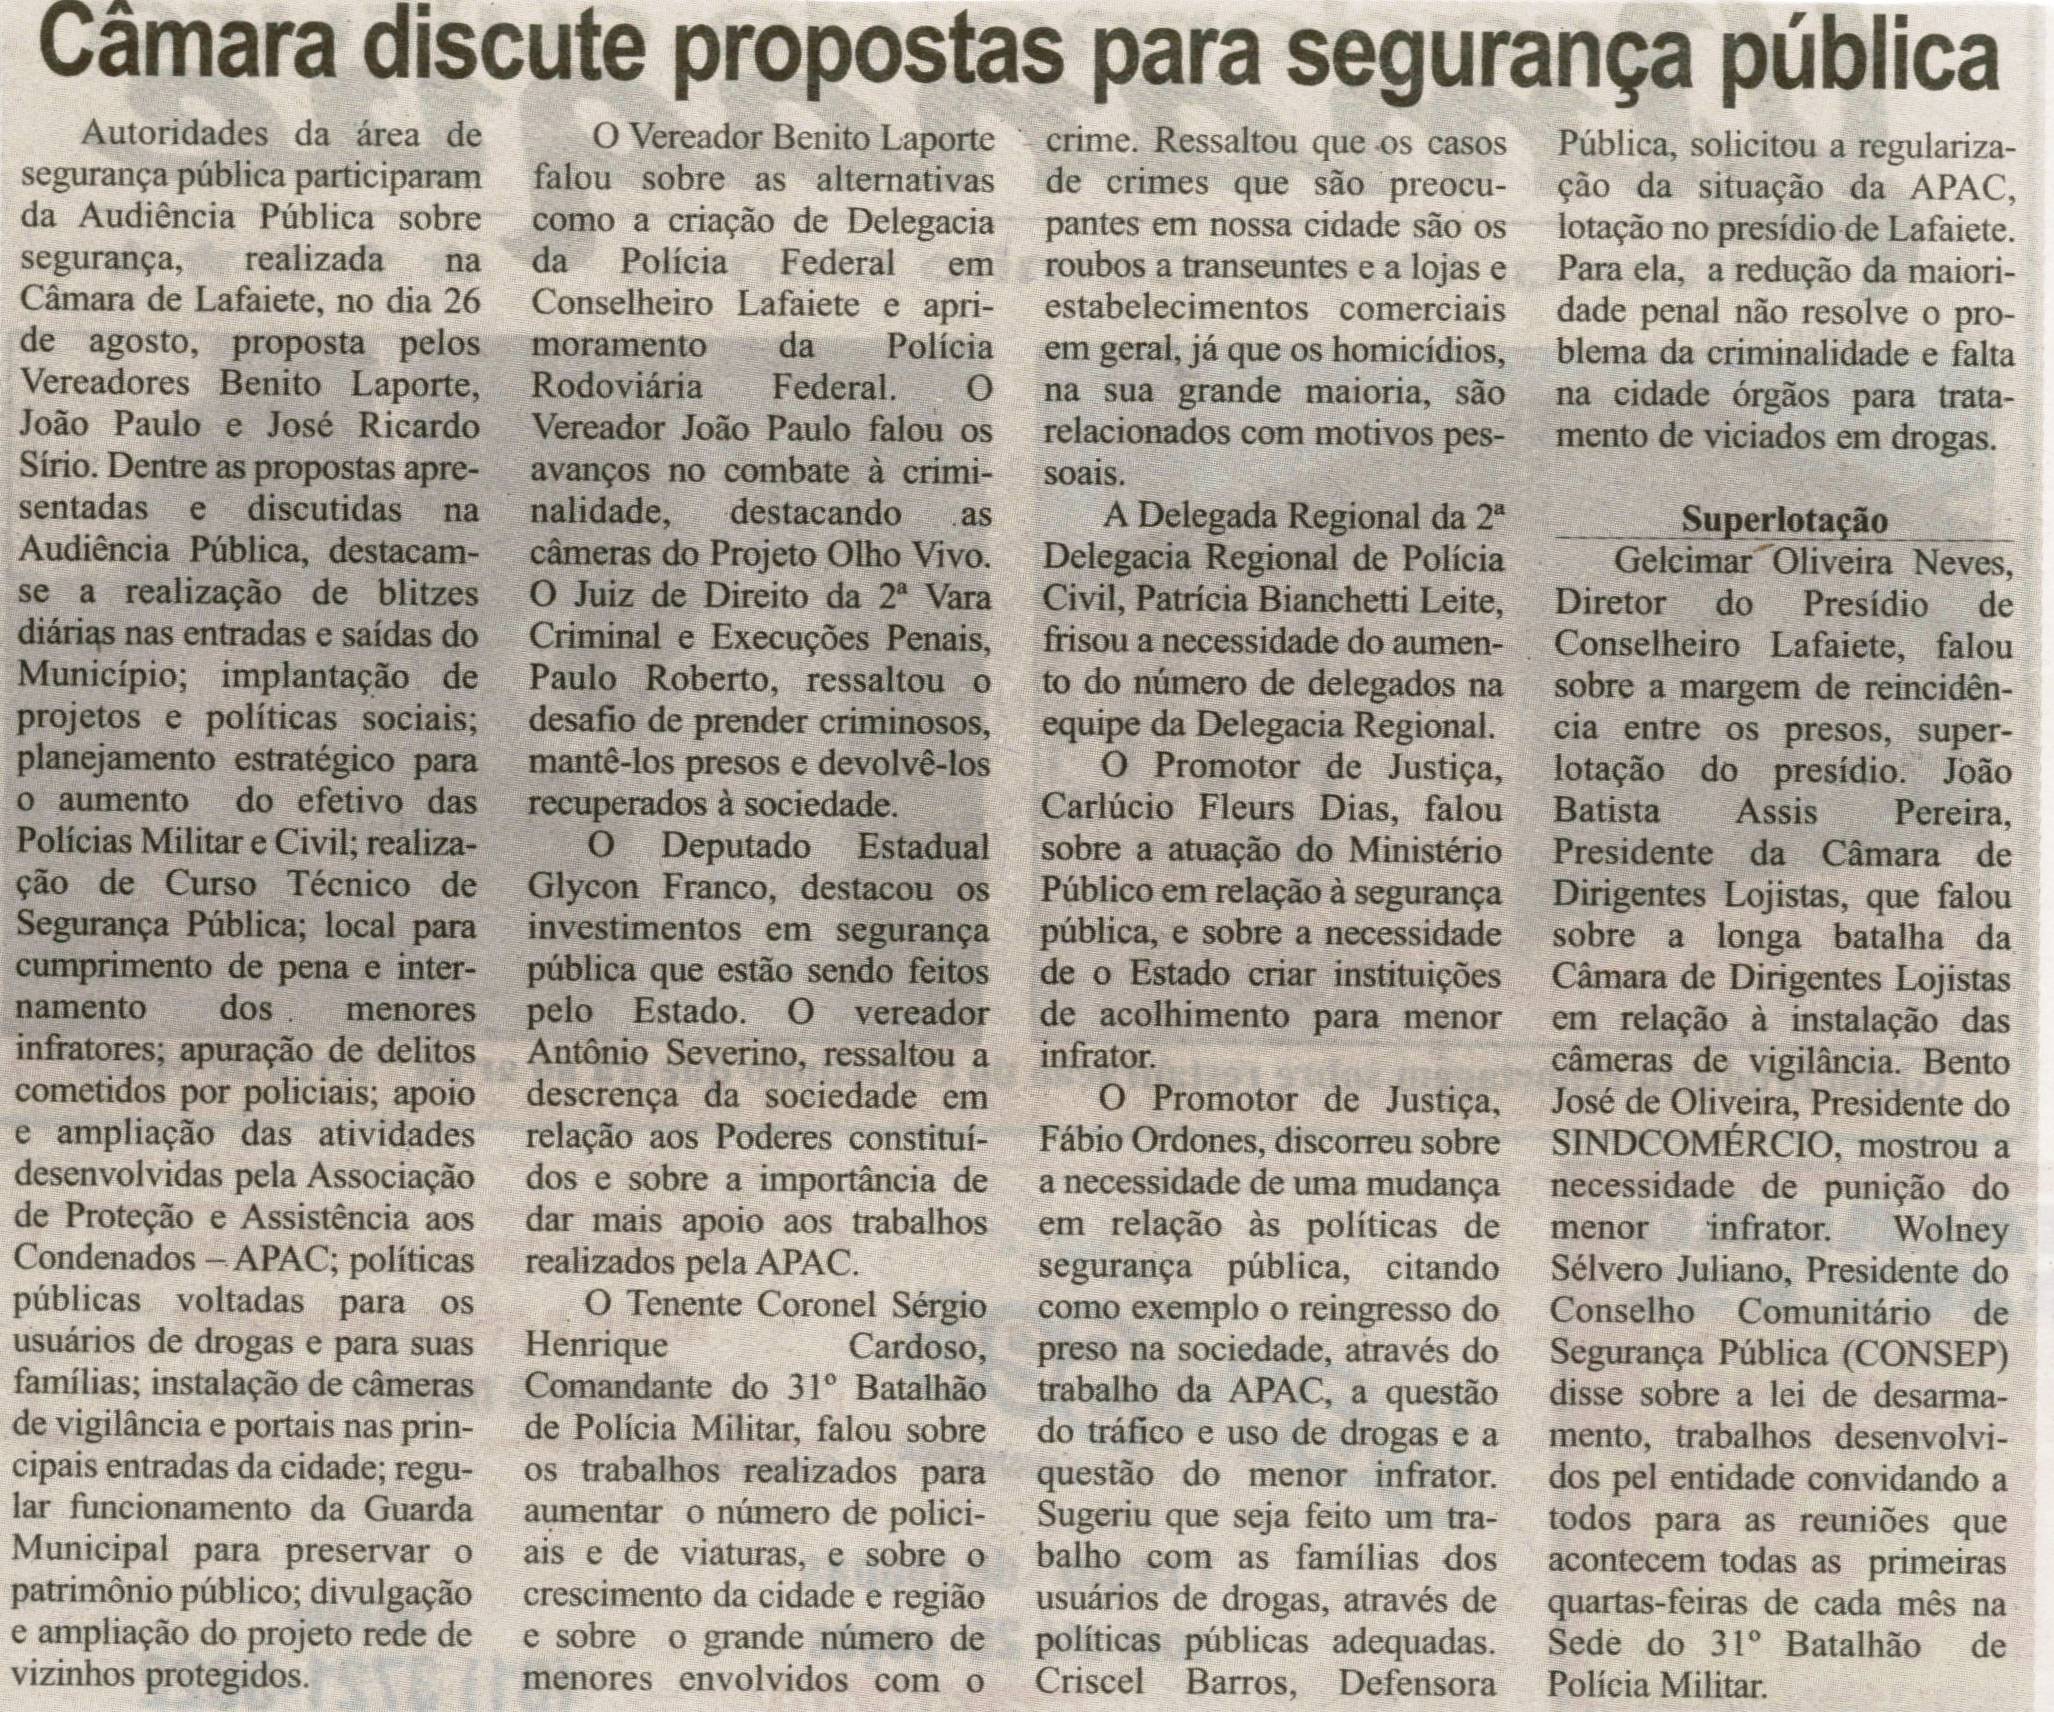 Câmera discute propostas para segurança pública. Correio de Minas, Conselheiro Lafaiete, 31 ago. 2013, p. 02.